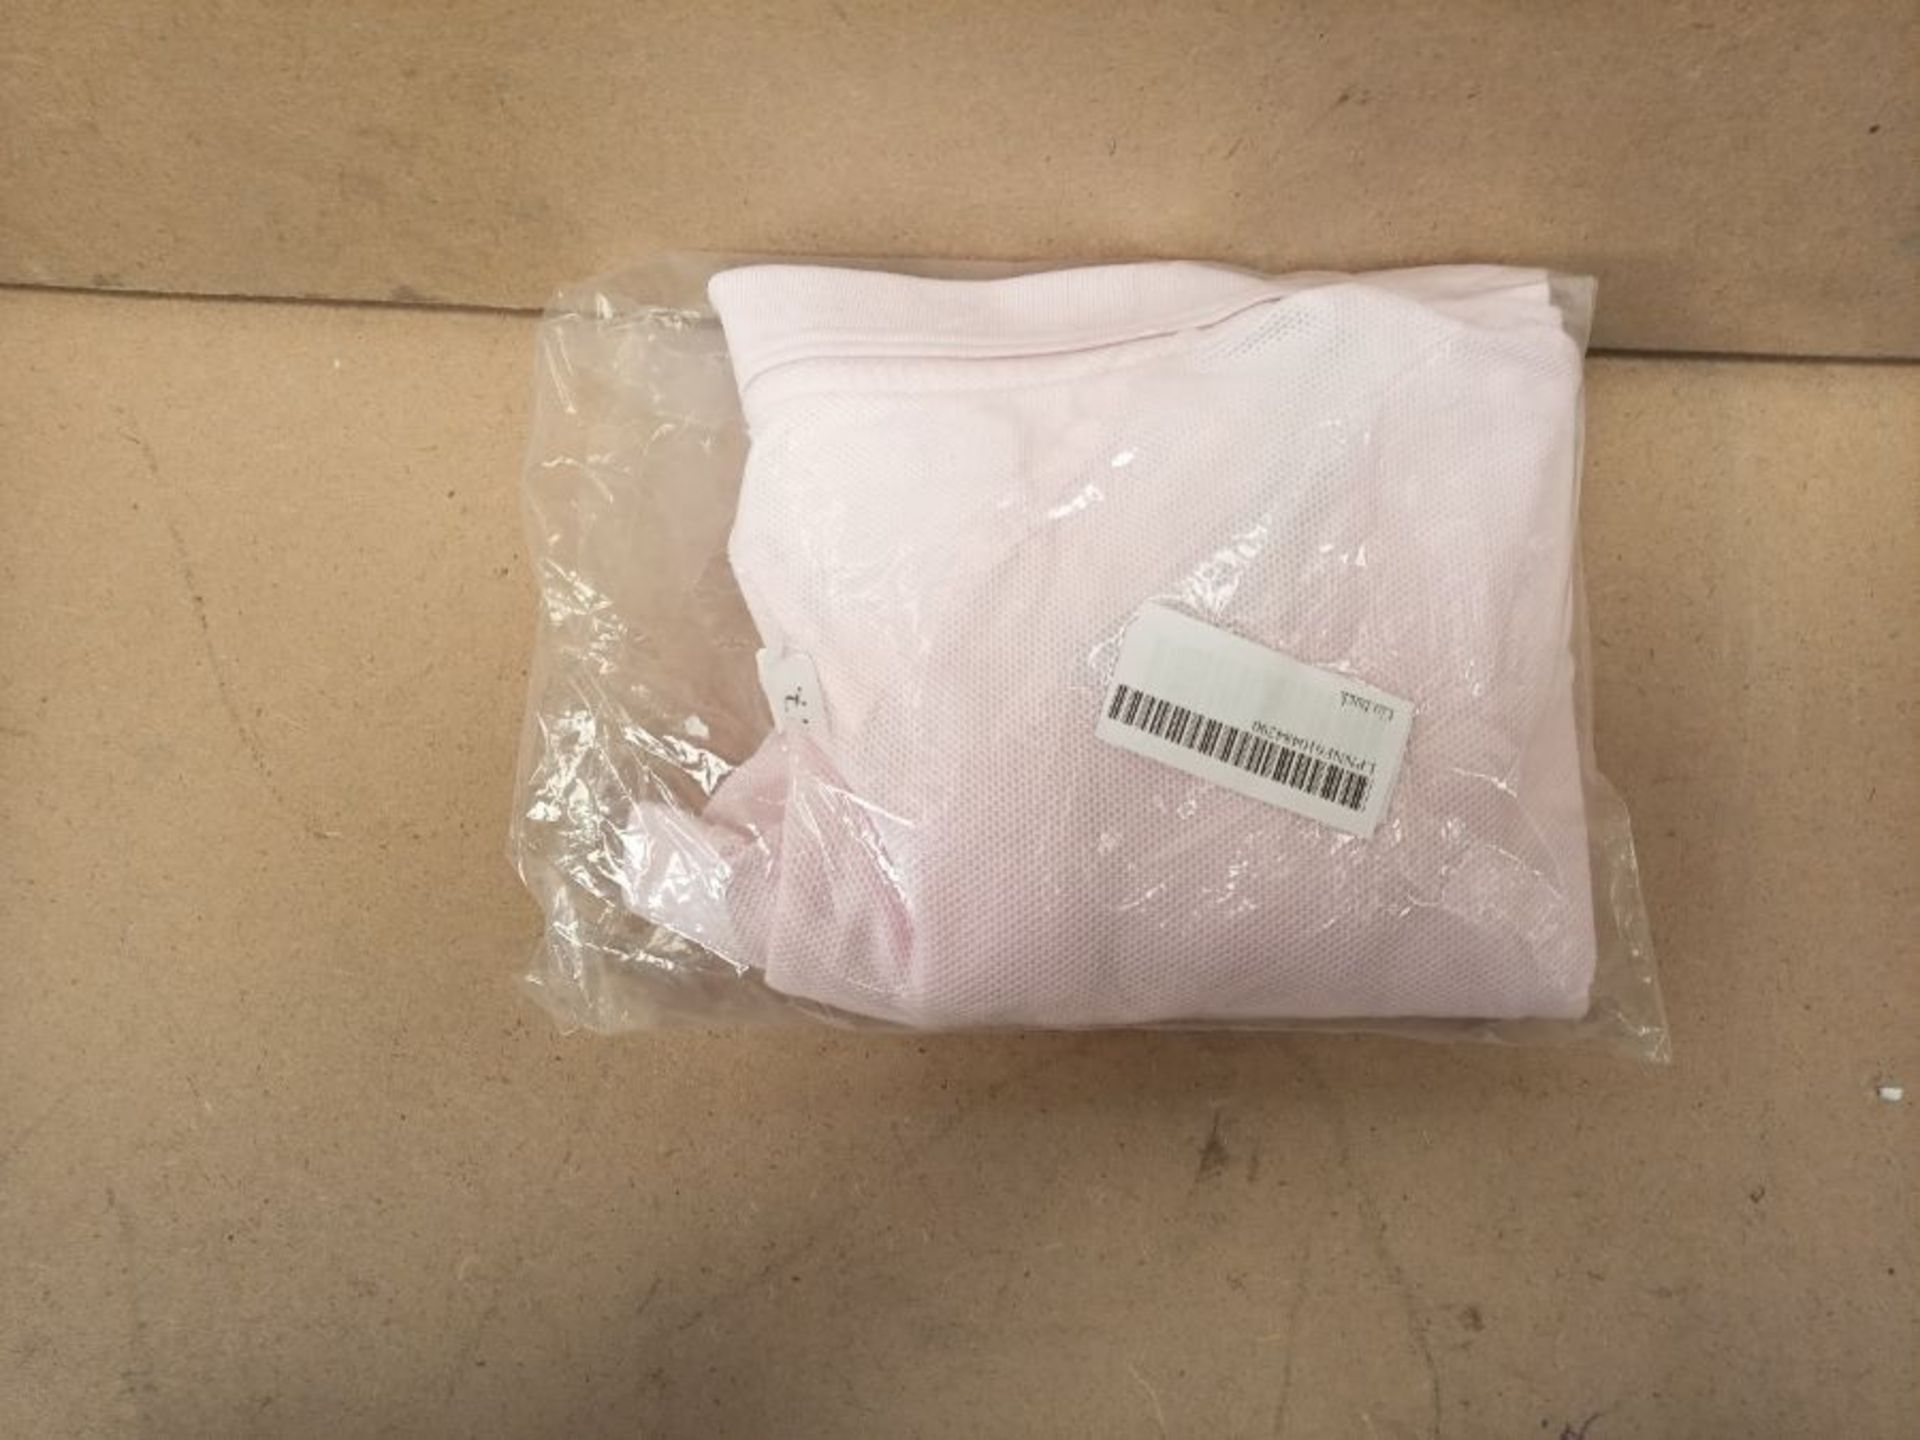 Tommy Hilfiger Men's Structured Pocket Regular Polo Shirt, Light Pink, M - Image 2 of 3